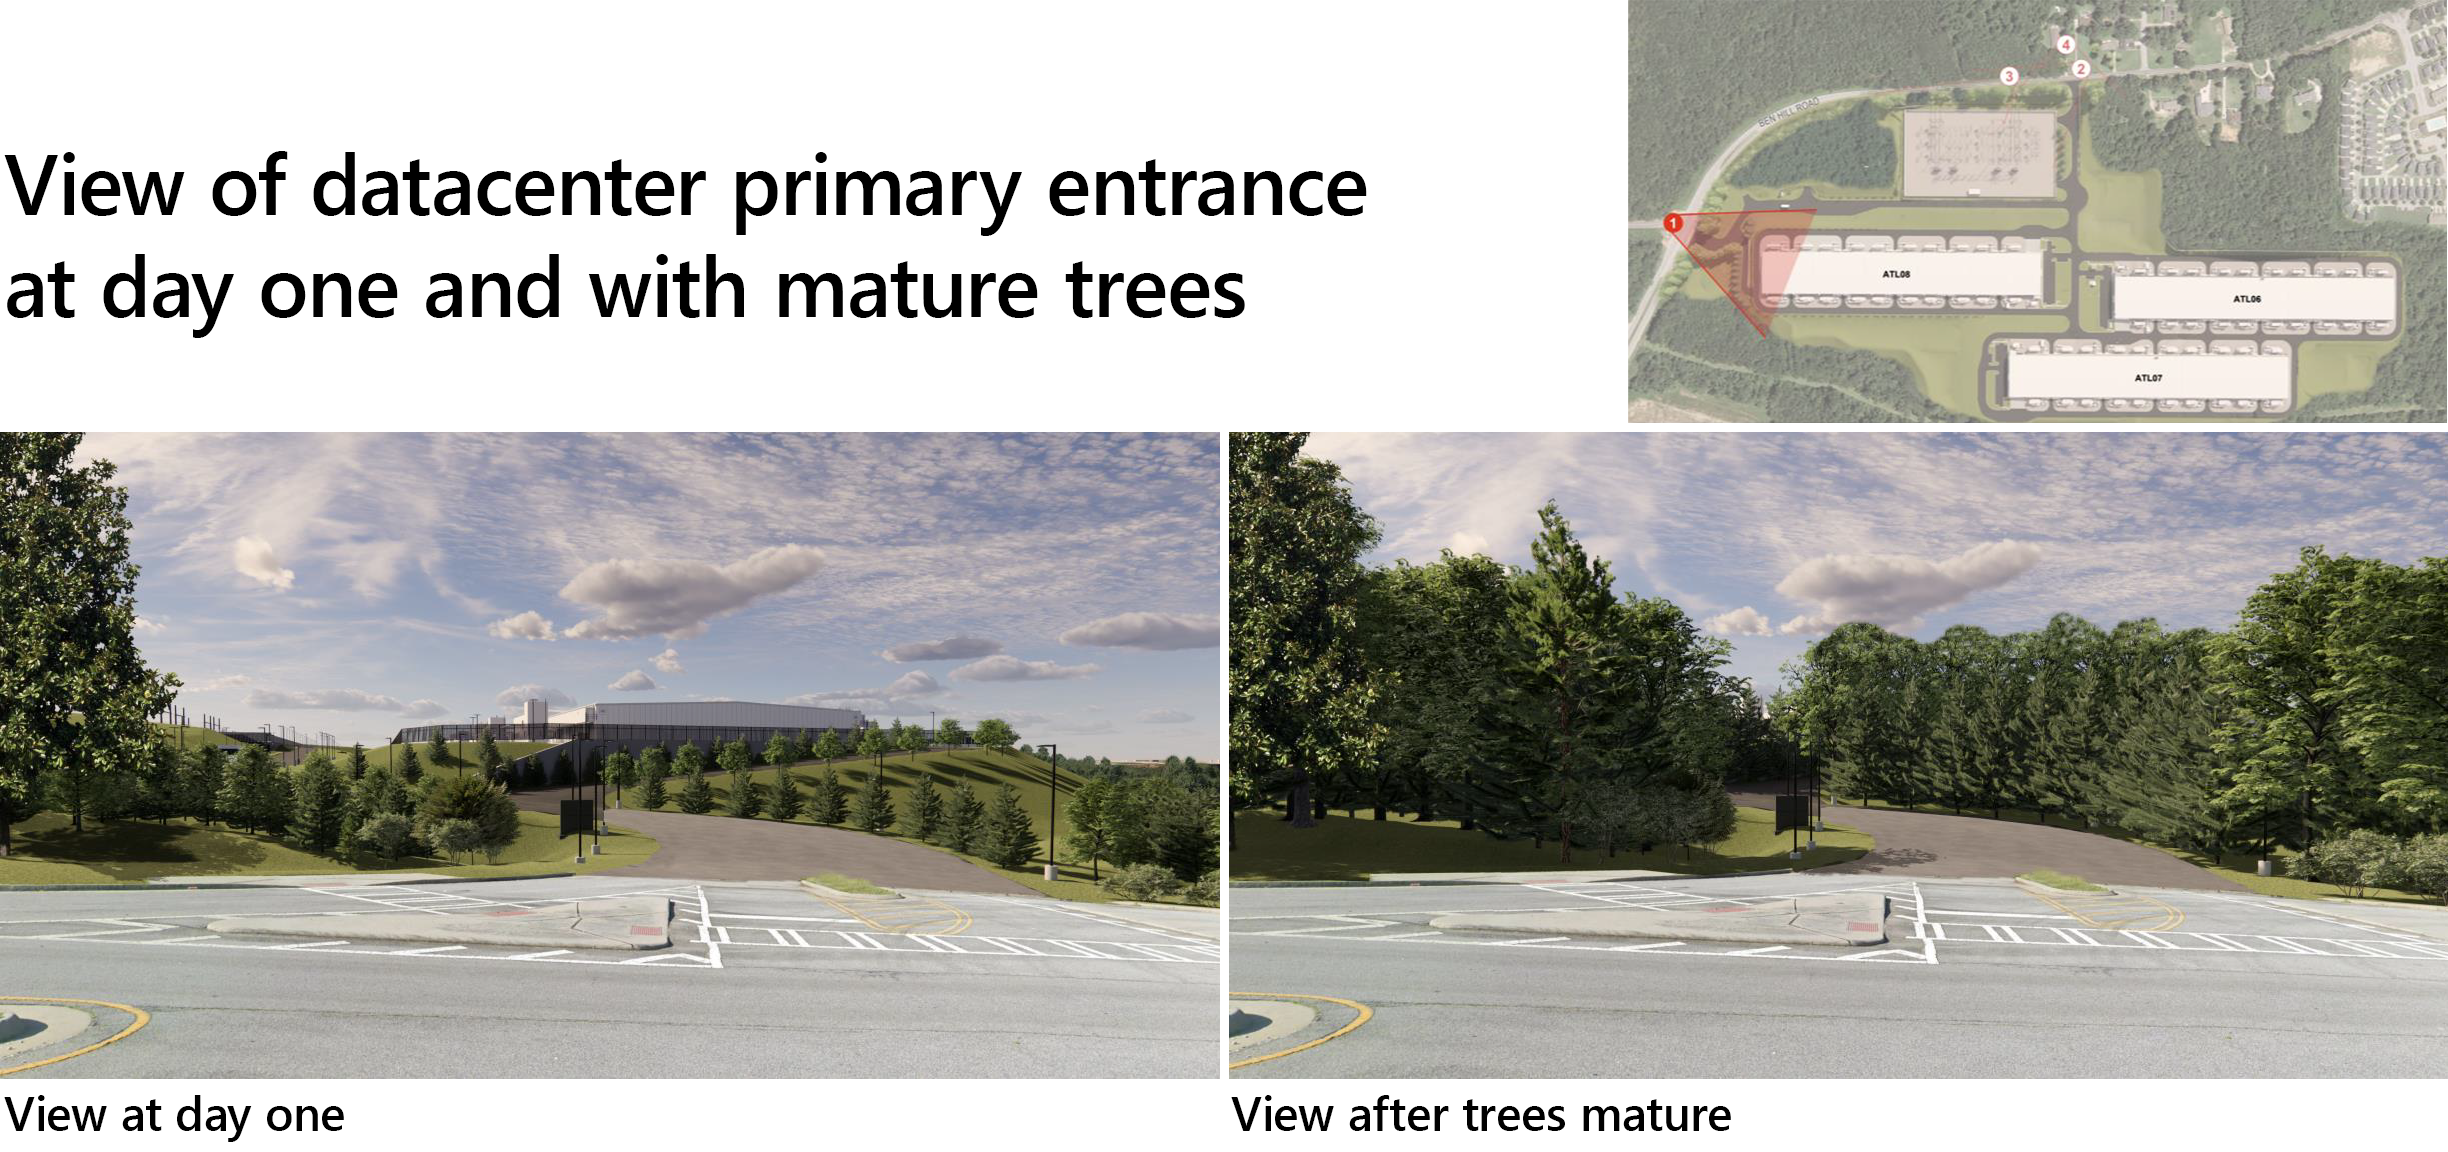 पहिल्या दिवशी प्राथमिक डेटासेंटर प्रवेशद्वाराचे दृश्य आणि परिपक्व झाडे